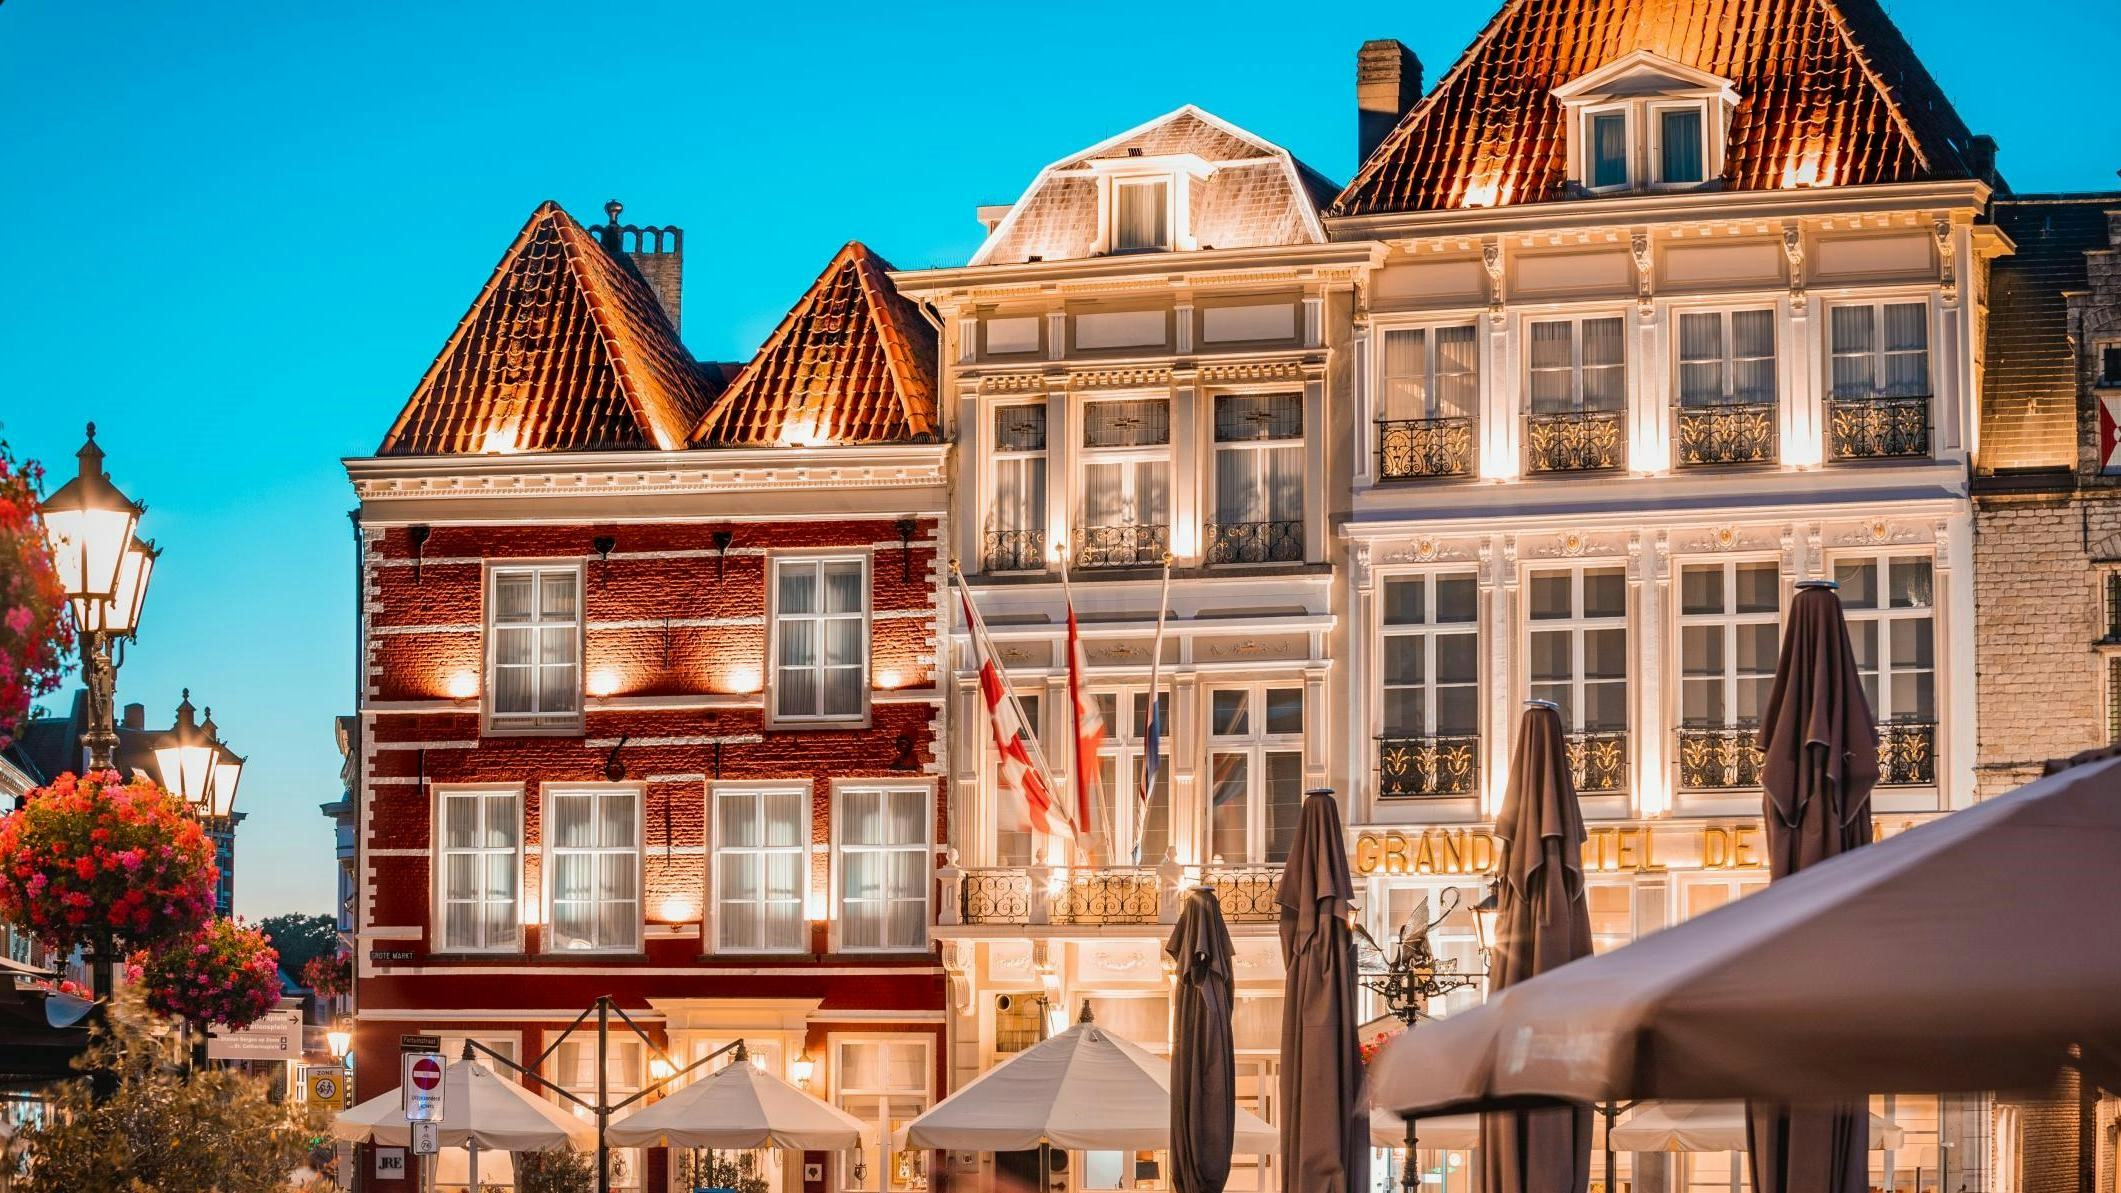 Hotel De Draak in Bergen op Zoom, het oudste hotel van Nederland